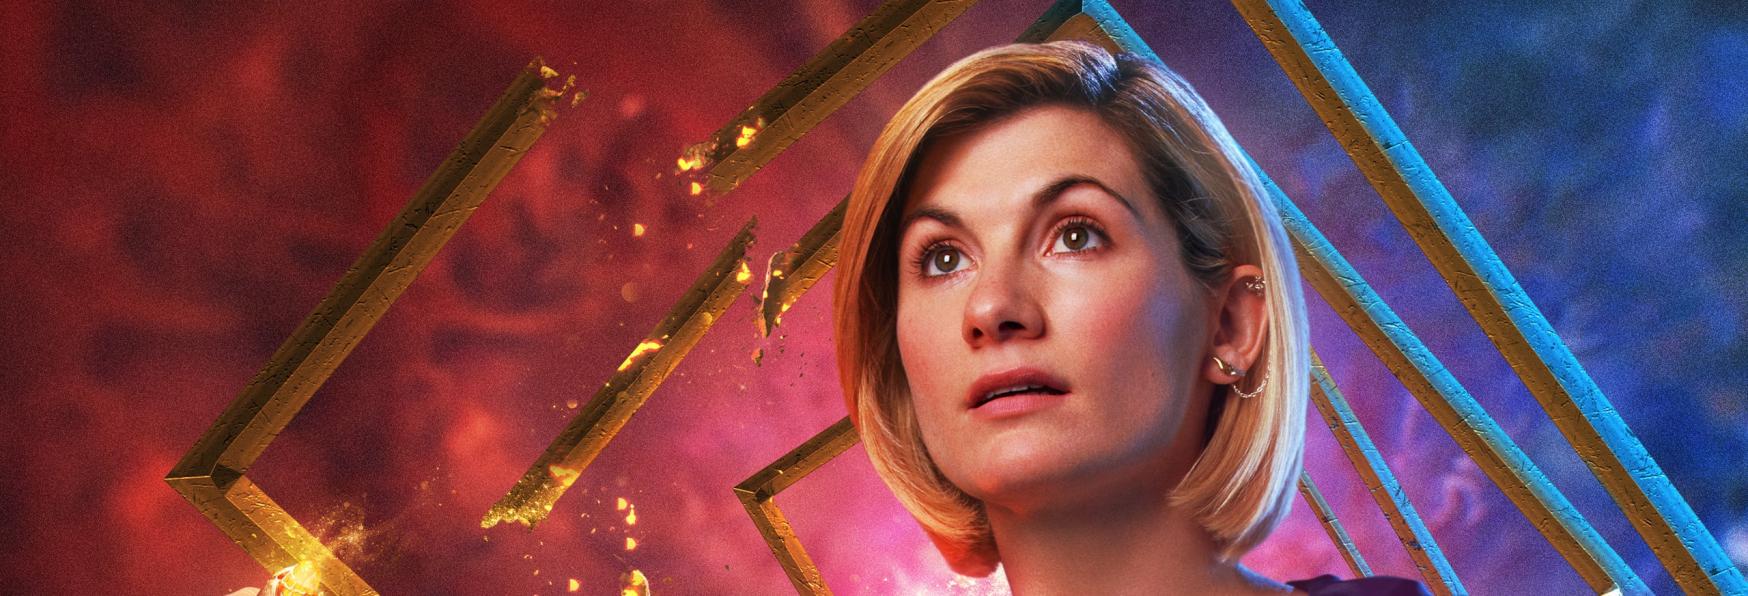 Doctor Who: rilasciate le Prime Immagini dell'Episodio Speciale "The Power of the Doctor"